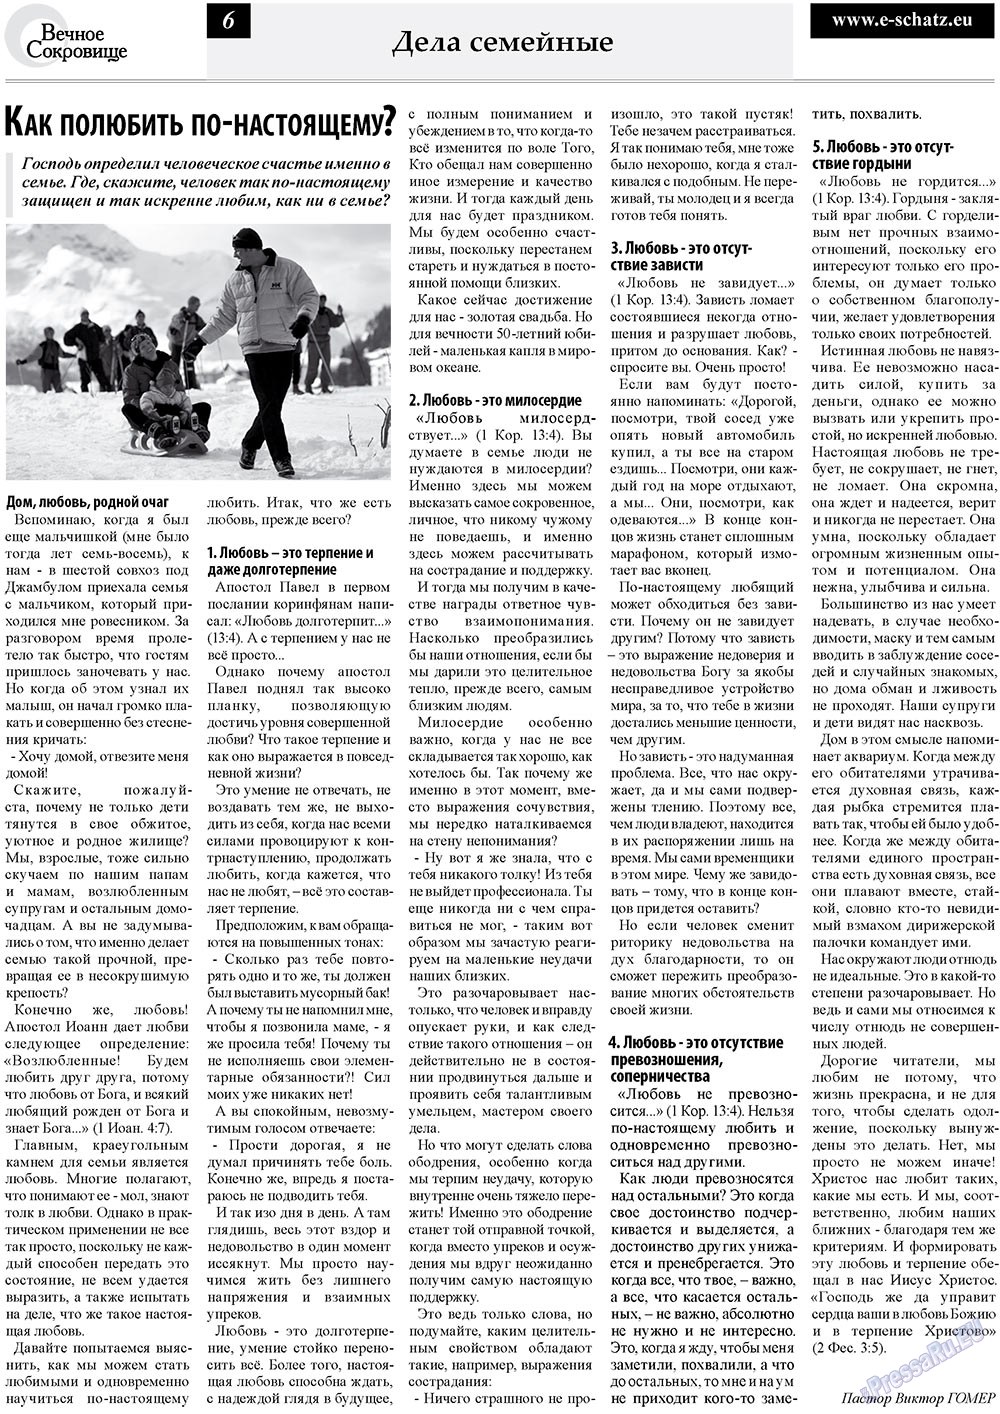 Вечное сокровище, газета. 2010 №3 стр.6